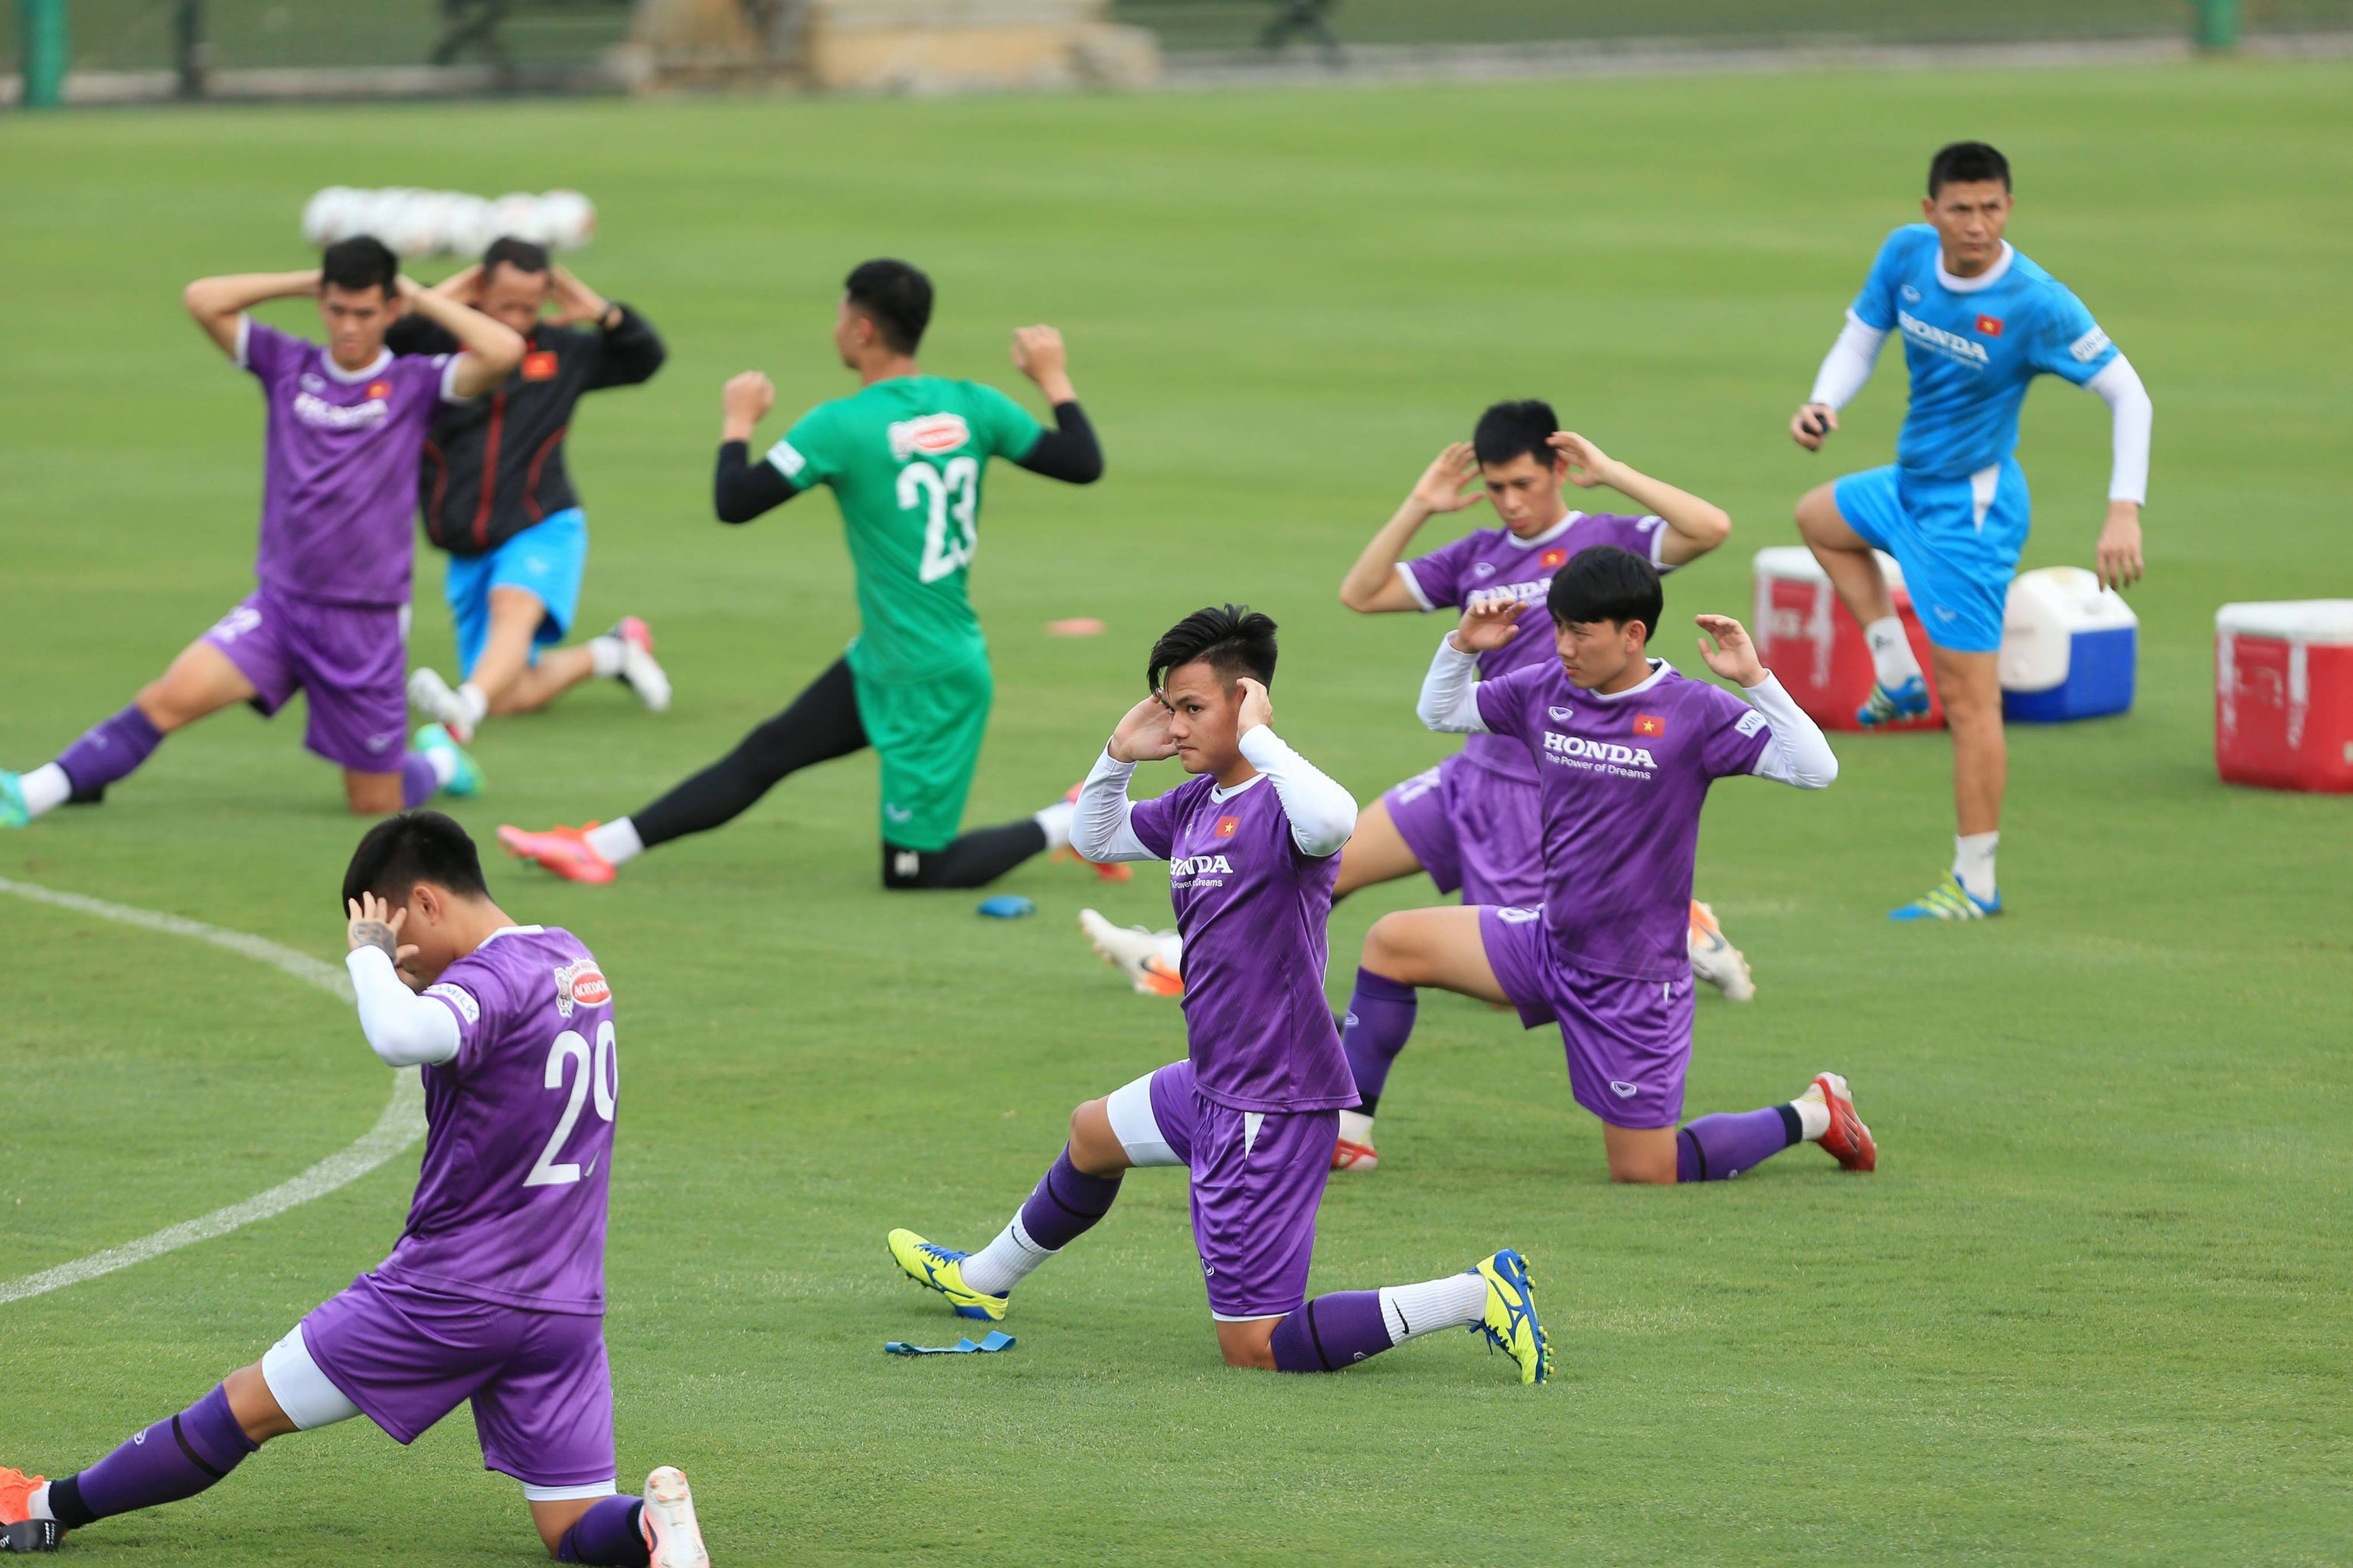 Dù thầy Park chưa thể ra sân tập vì bận cách li nhưng đội tuyển Việt Nam đang tập luyện một cách say sưa dưới sự chỉ dẫn của các trợ lý. Tất cả vì mục tiêu cao nhất cho vòng loại cuối World Cup 2022 khu vực châu Á. Ảnh: Hải Hoàng